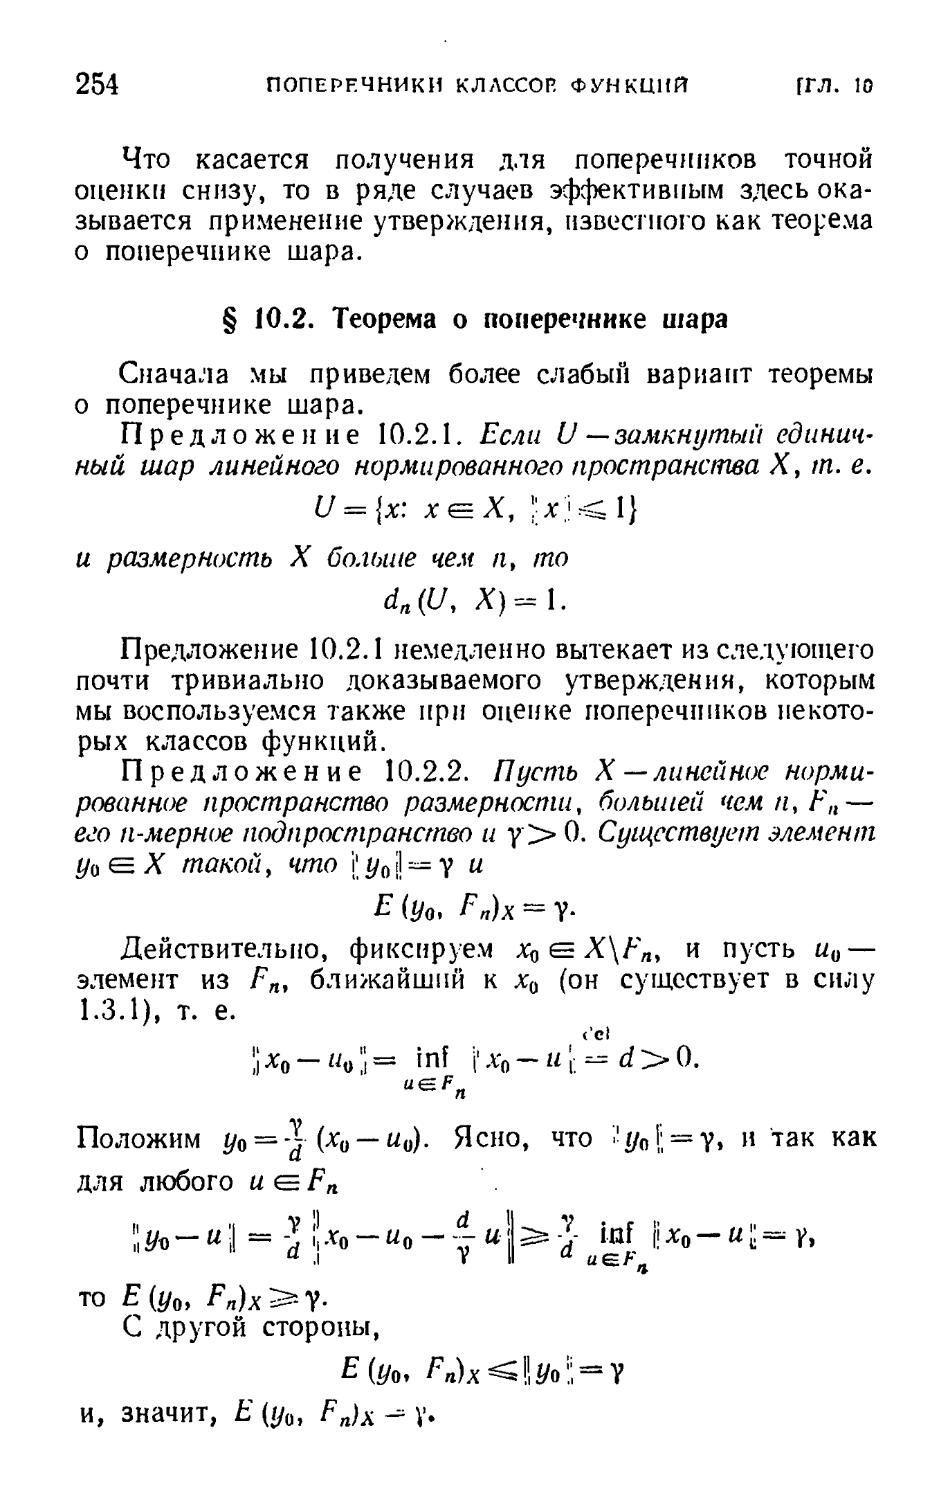 § 10.2. Теорема о поперечнике шара